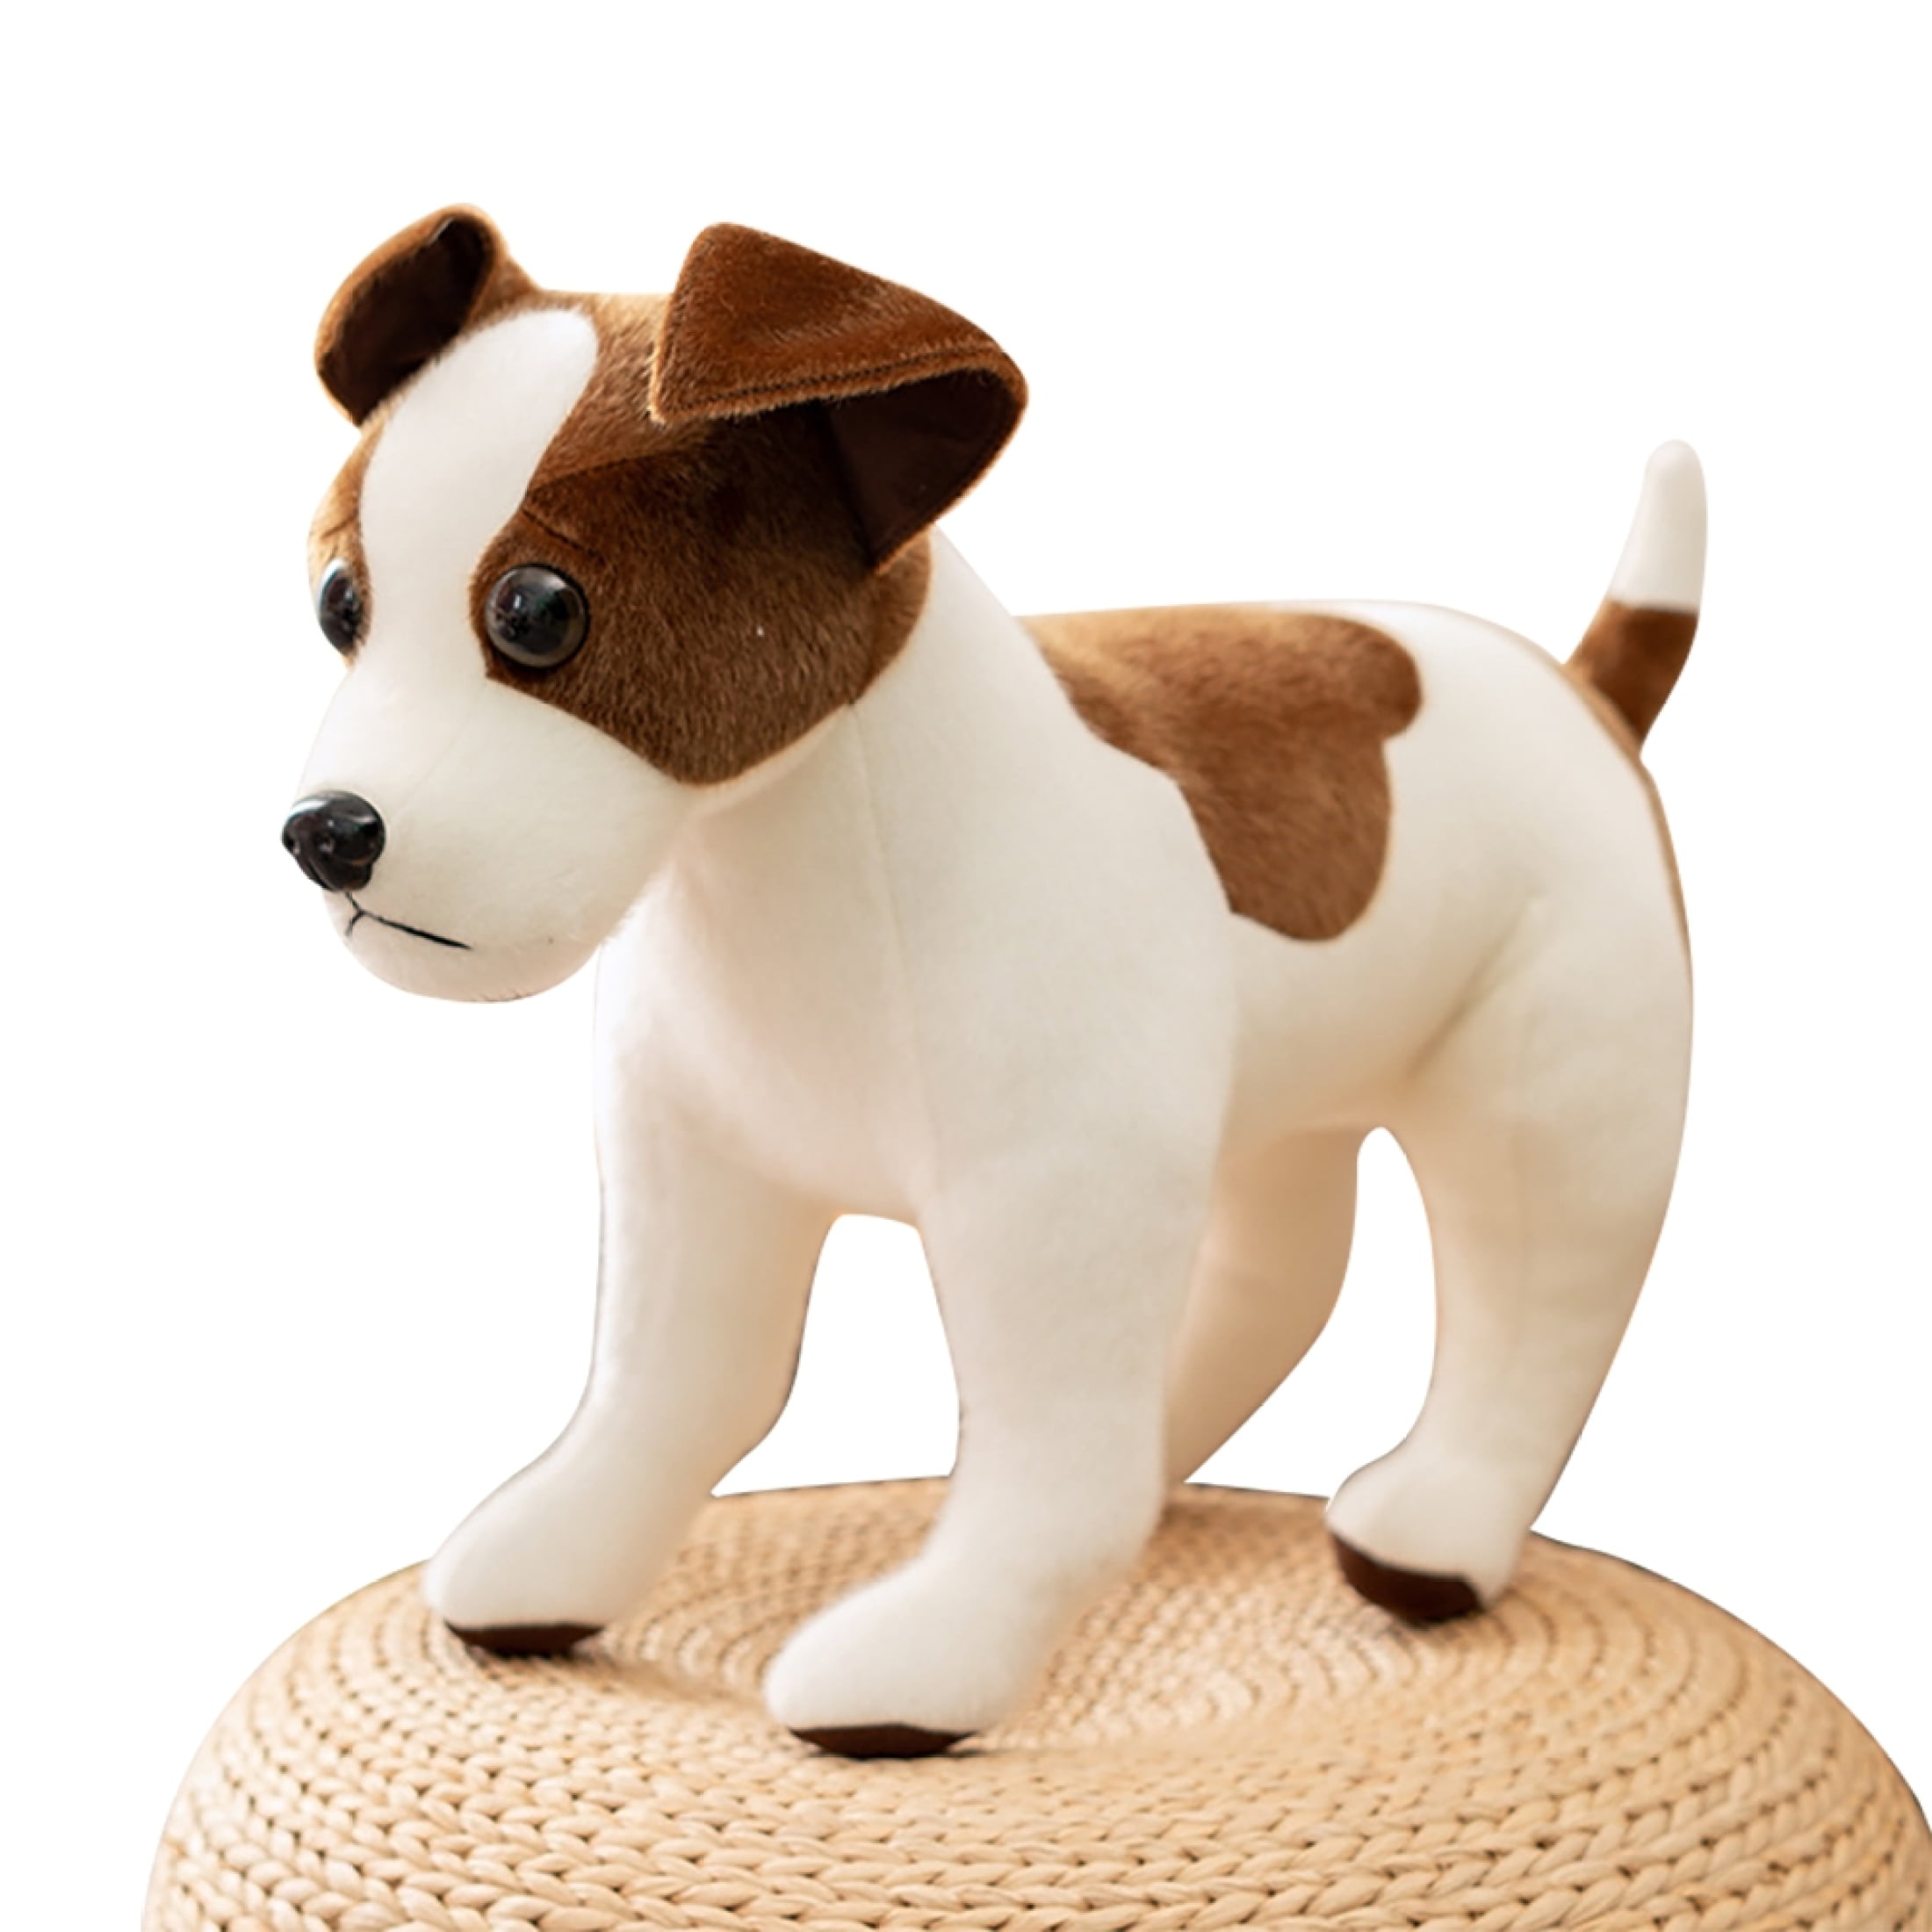  Laruokivi Temmie Plush Toy 10'' Dog Figure Doll : Toys & Games